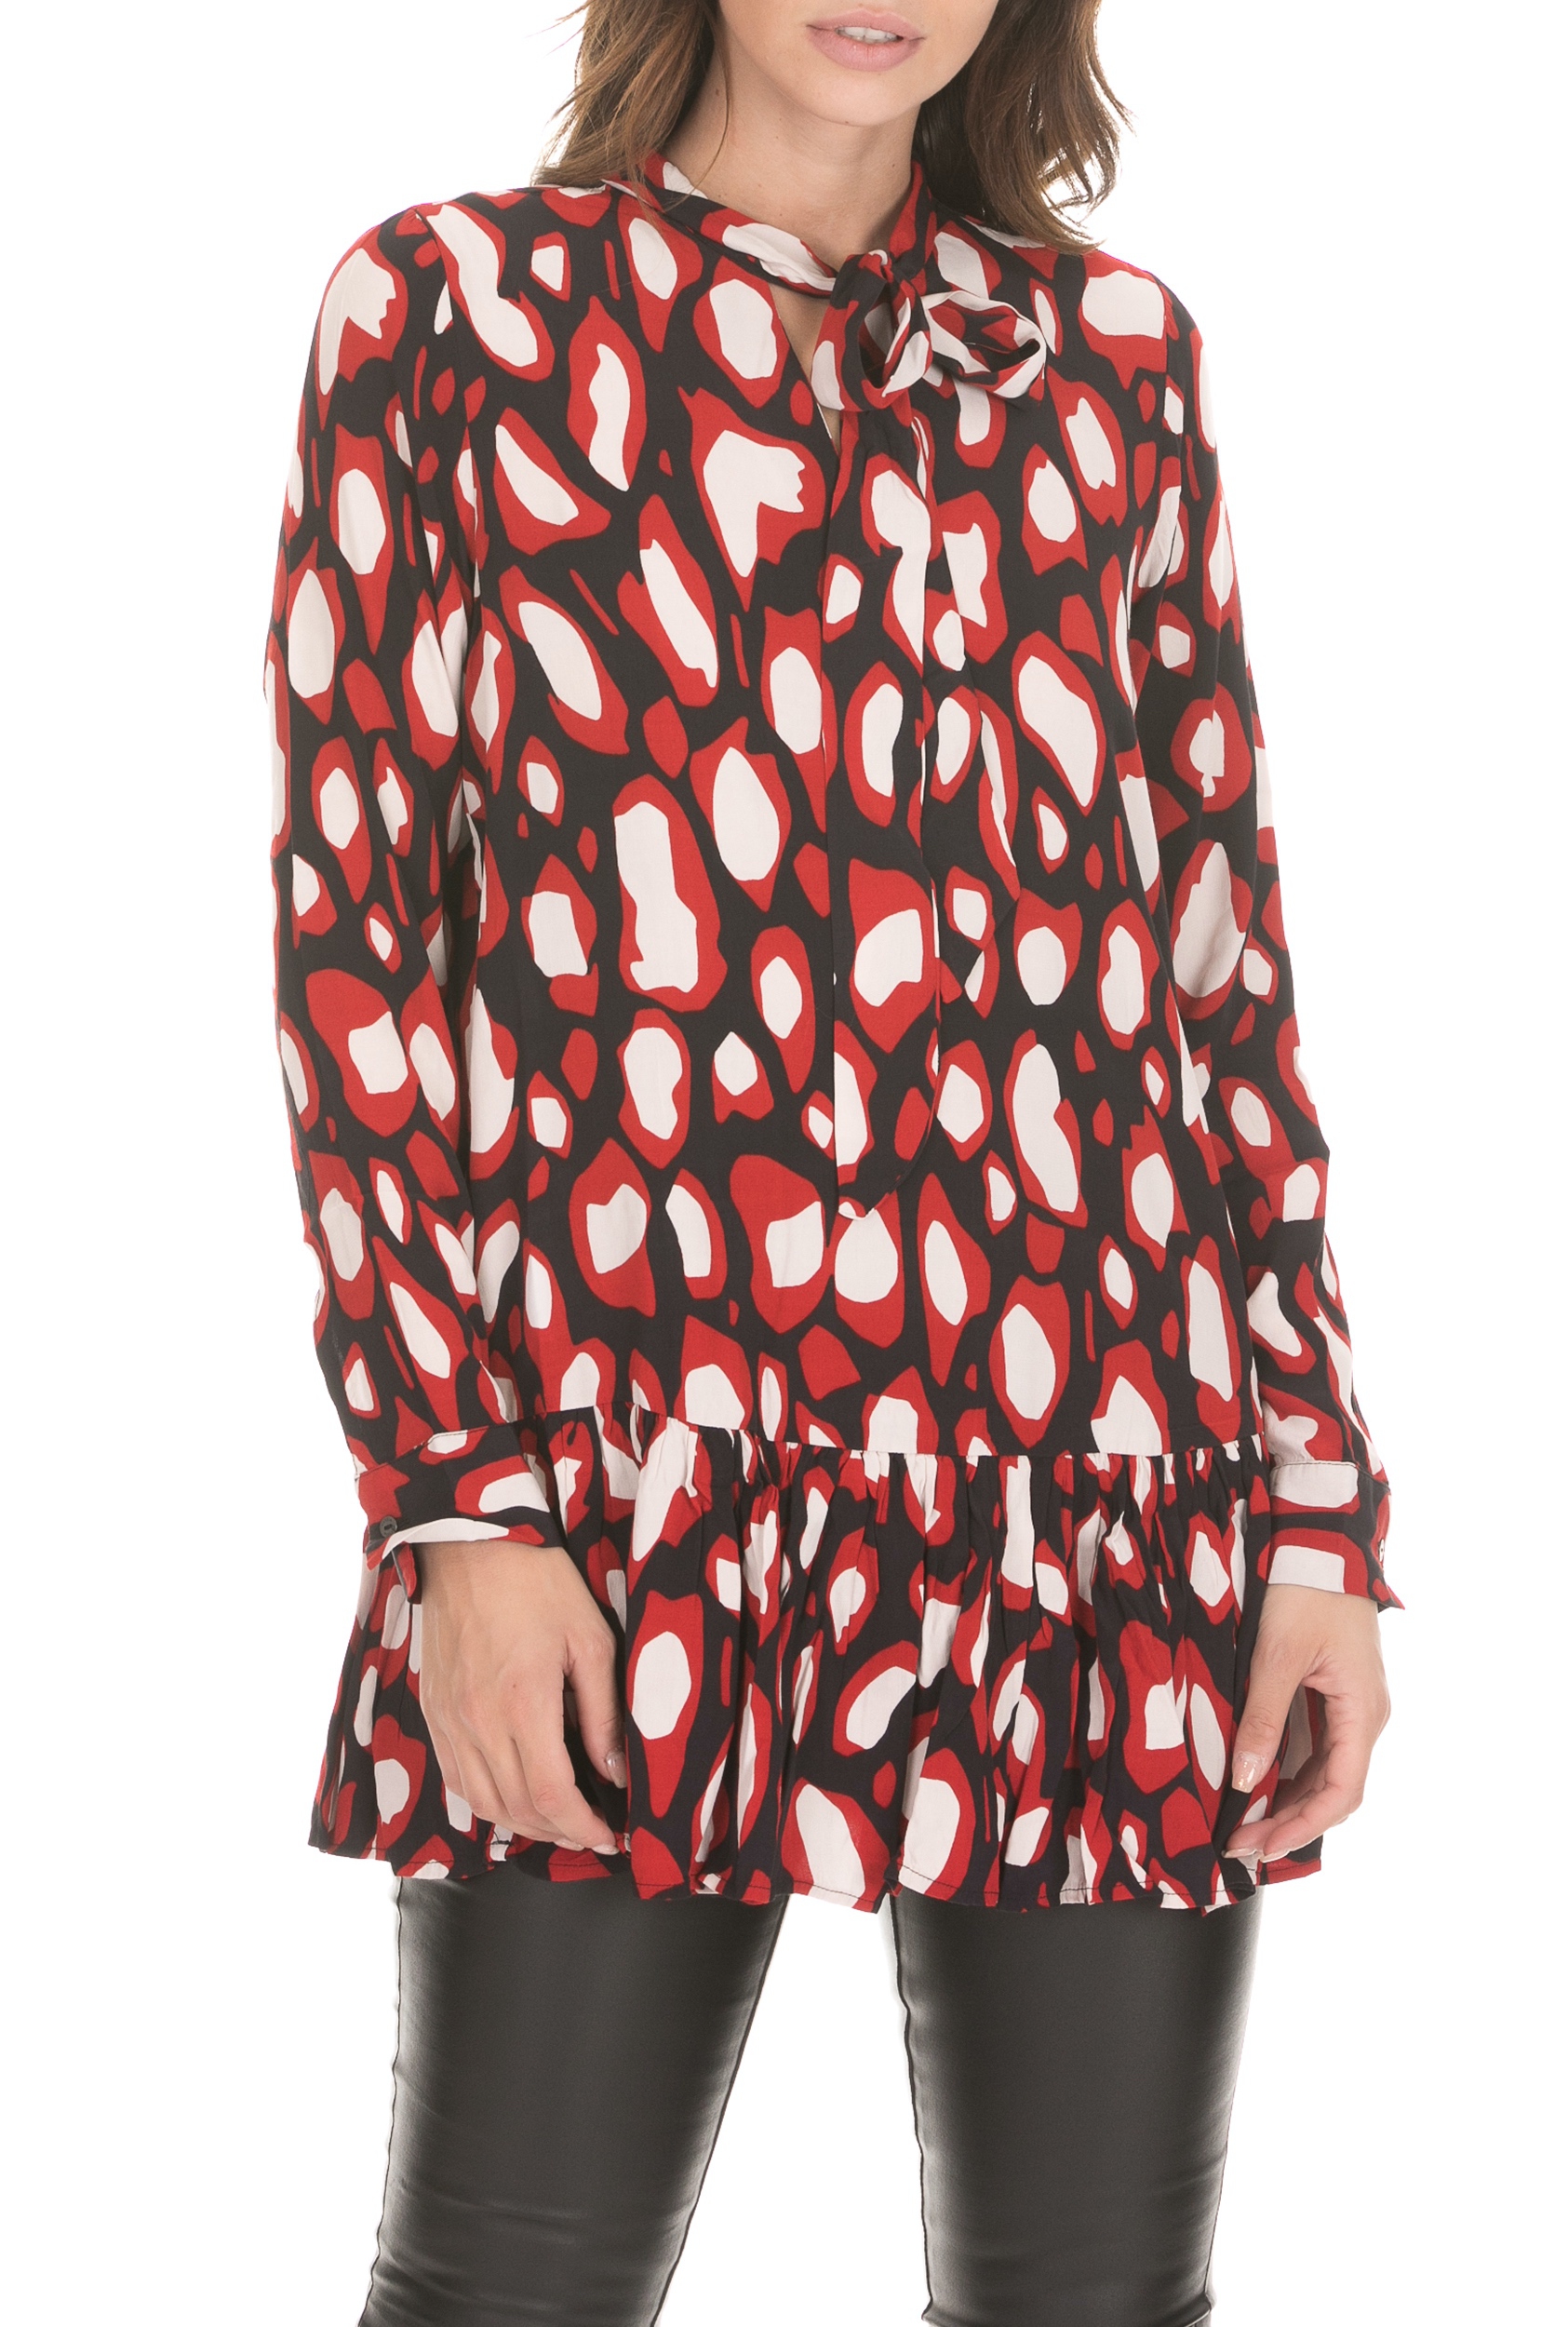 Γυναικεία/Ρούχα/Μπλούζες/Μακρυμάνικες GARCIA JEANS - Γυναικεία μπλούζα GARCIA JEANS κόκκινη μαύρη